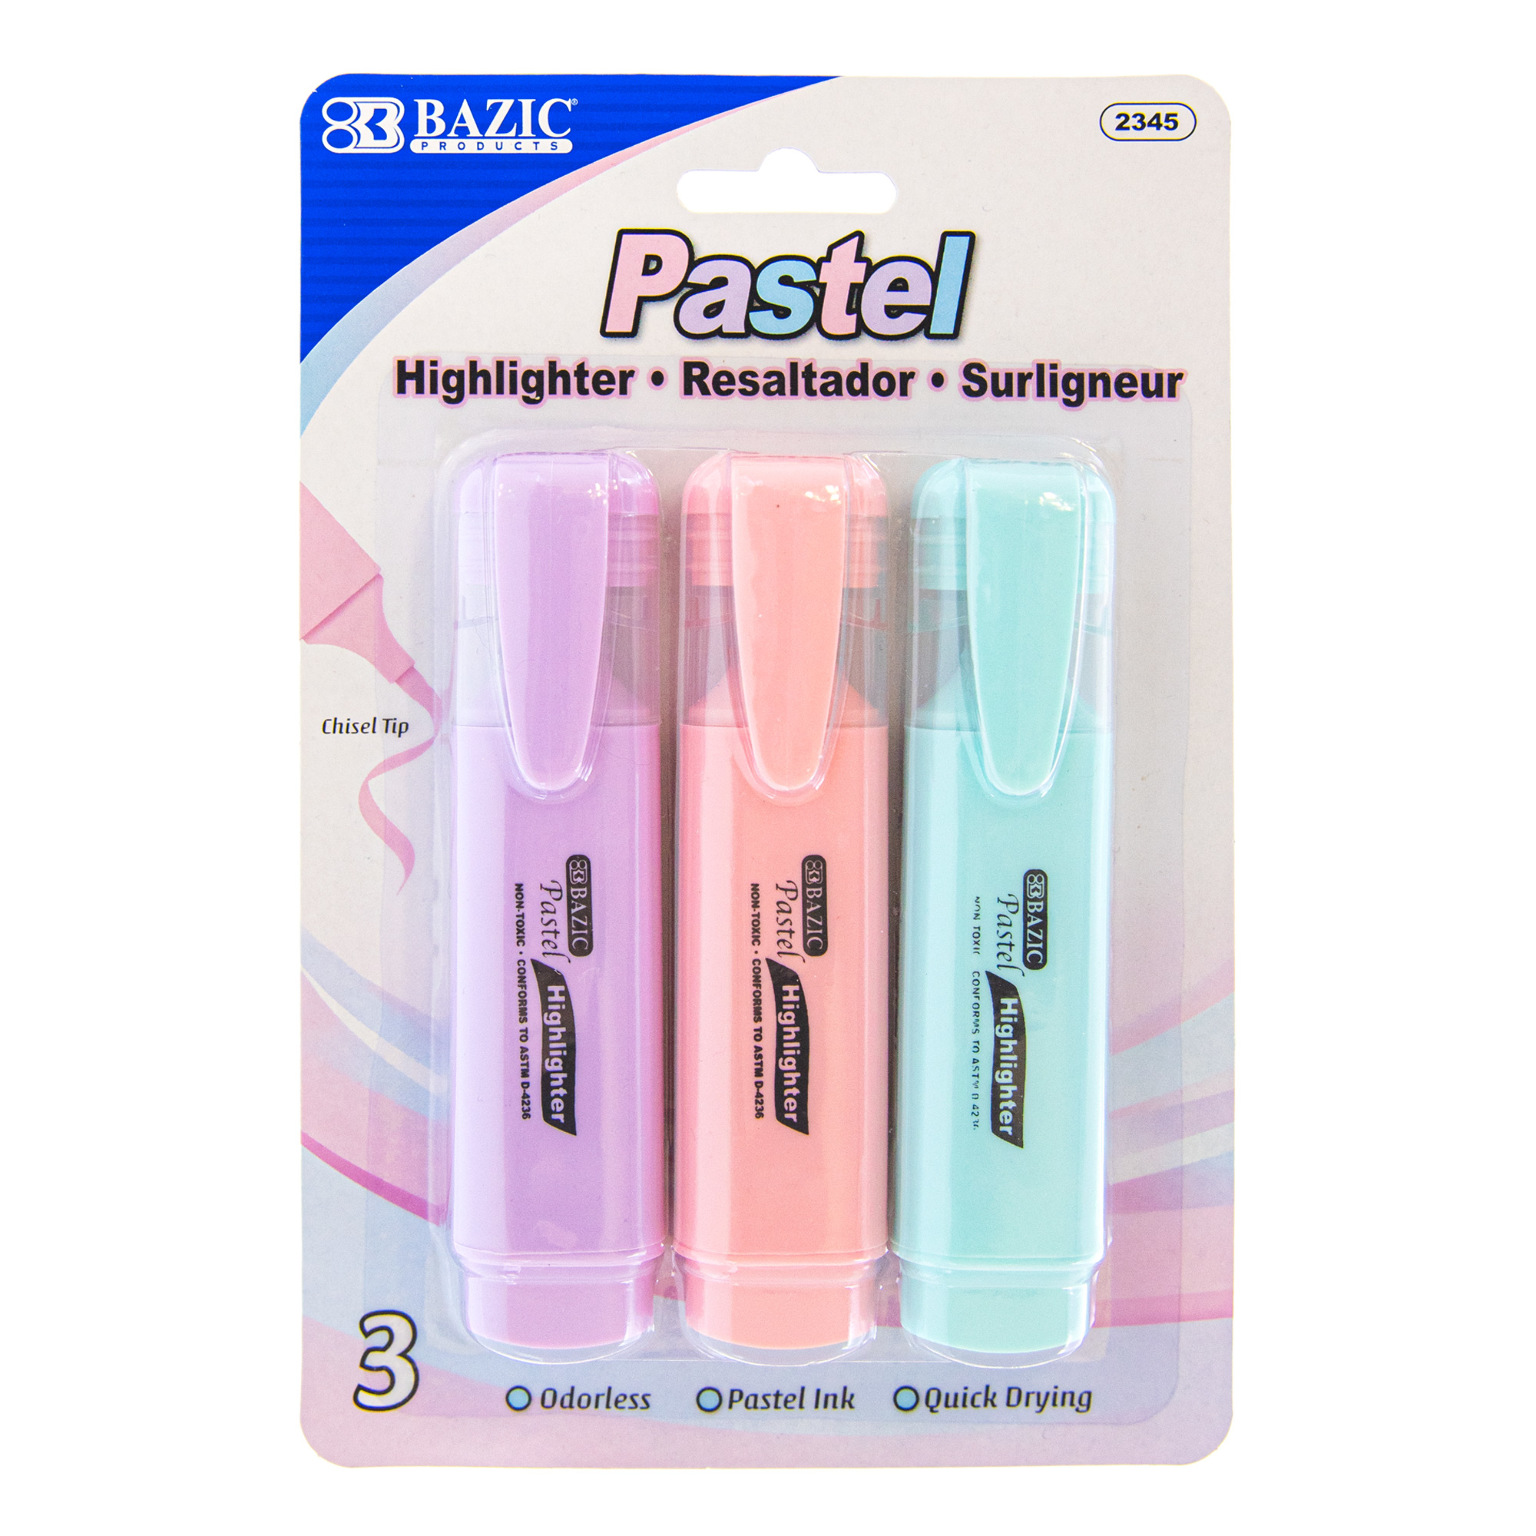 Wholesale Pastel Highlighters in Packs of 3 - DollarDays